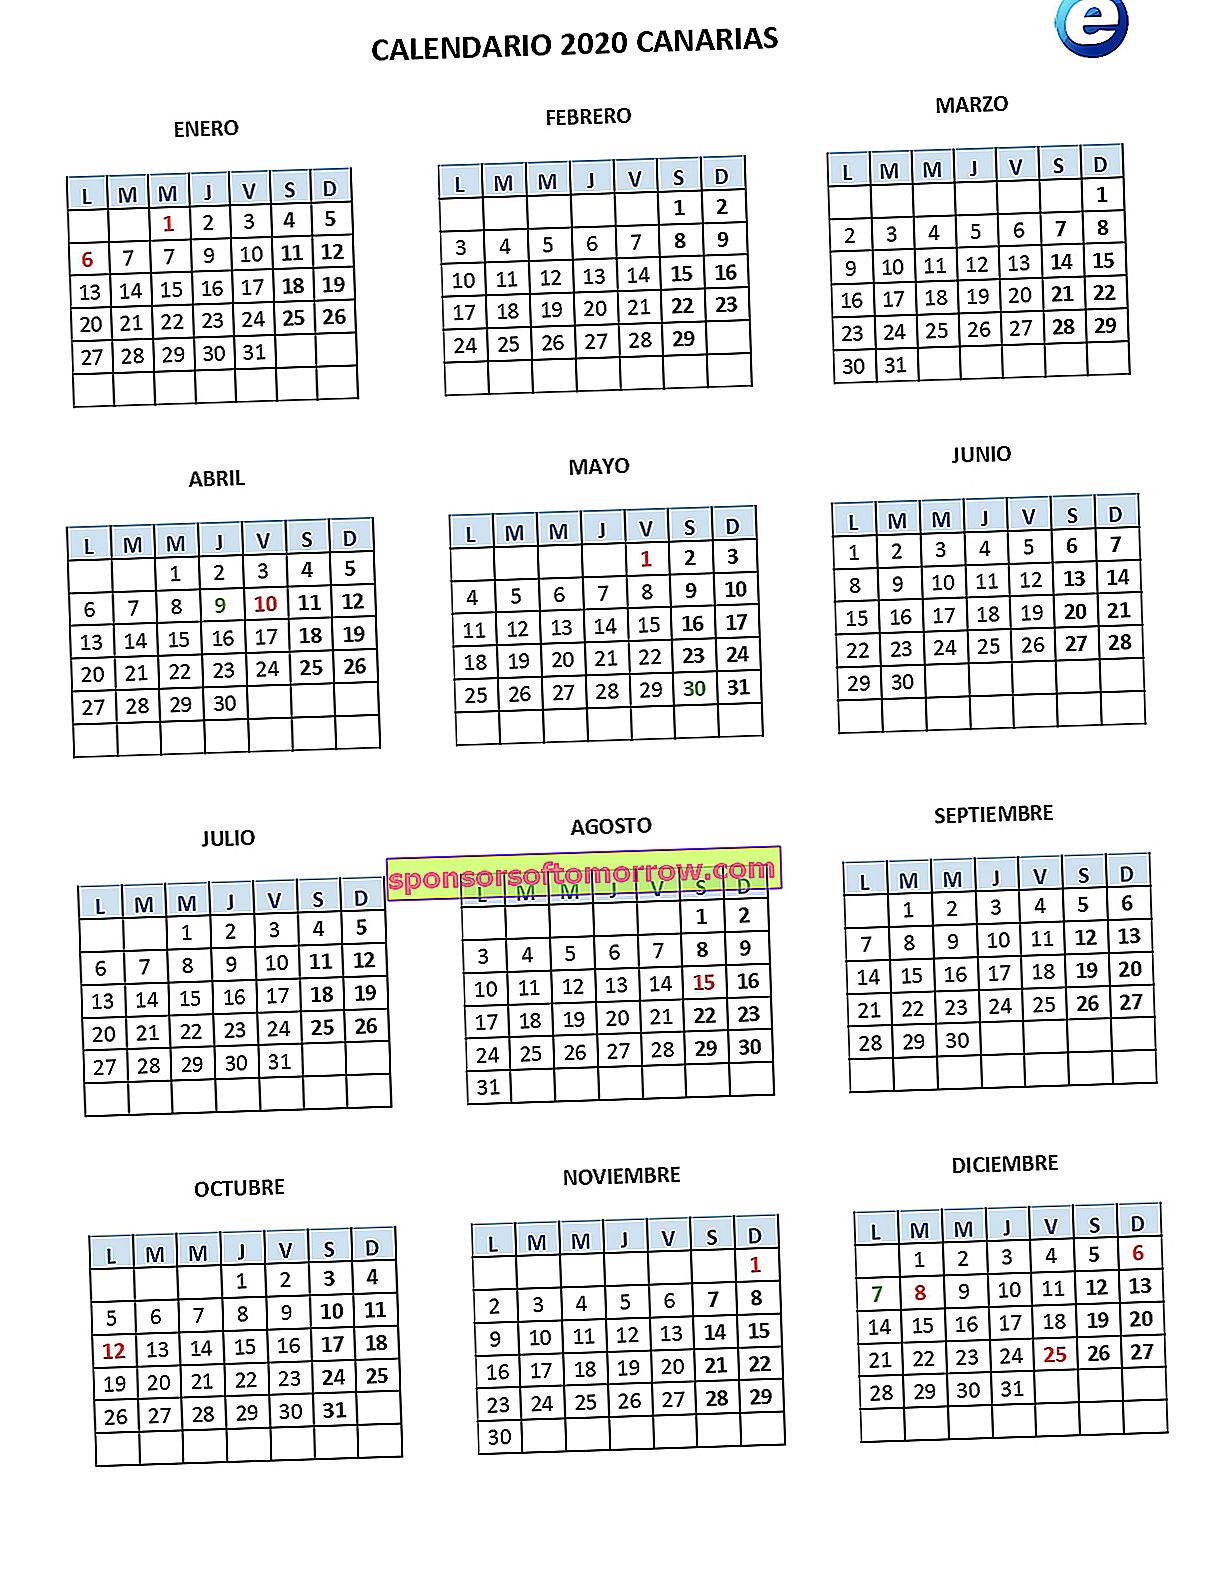 カナリア諸島カレンダー2020 _pages-to-jpg-0001